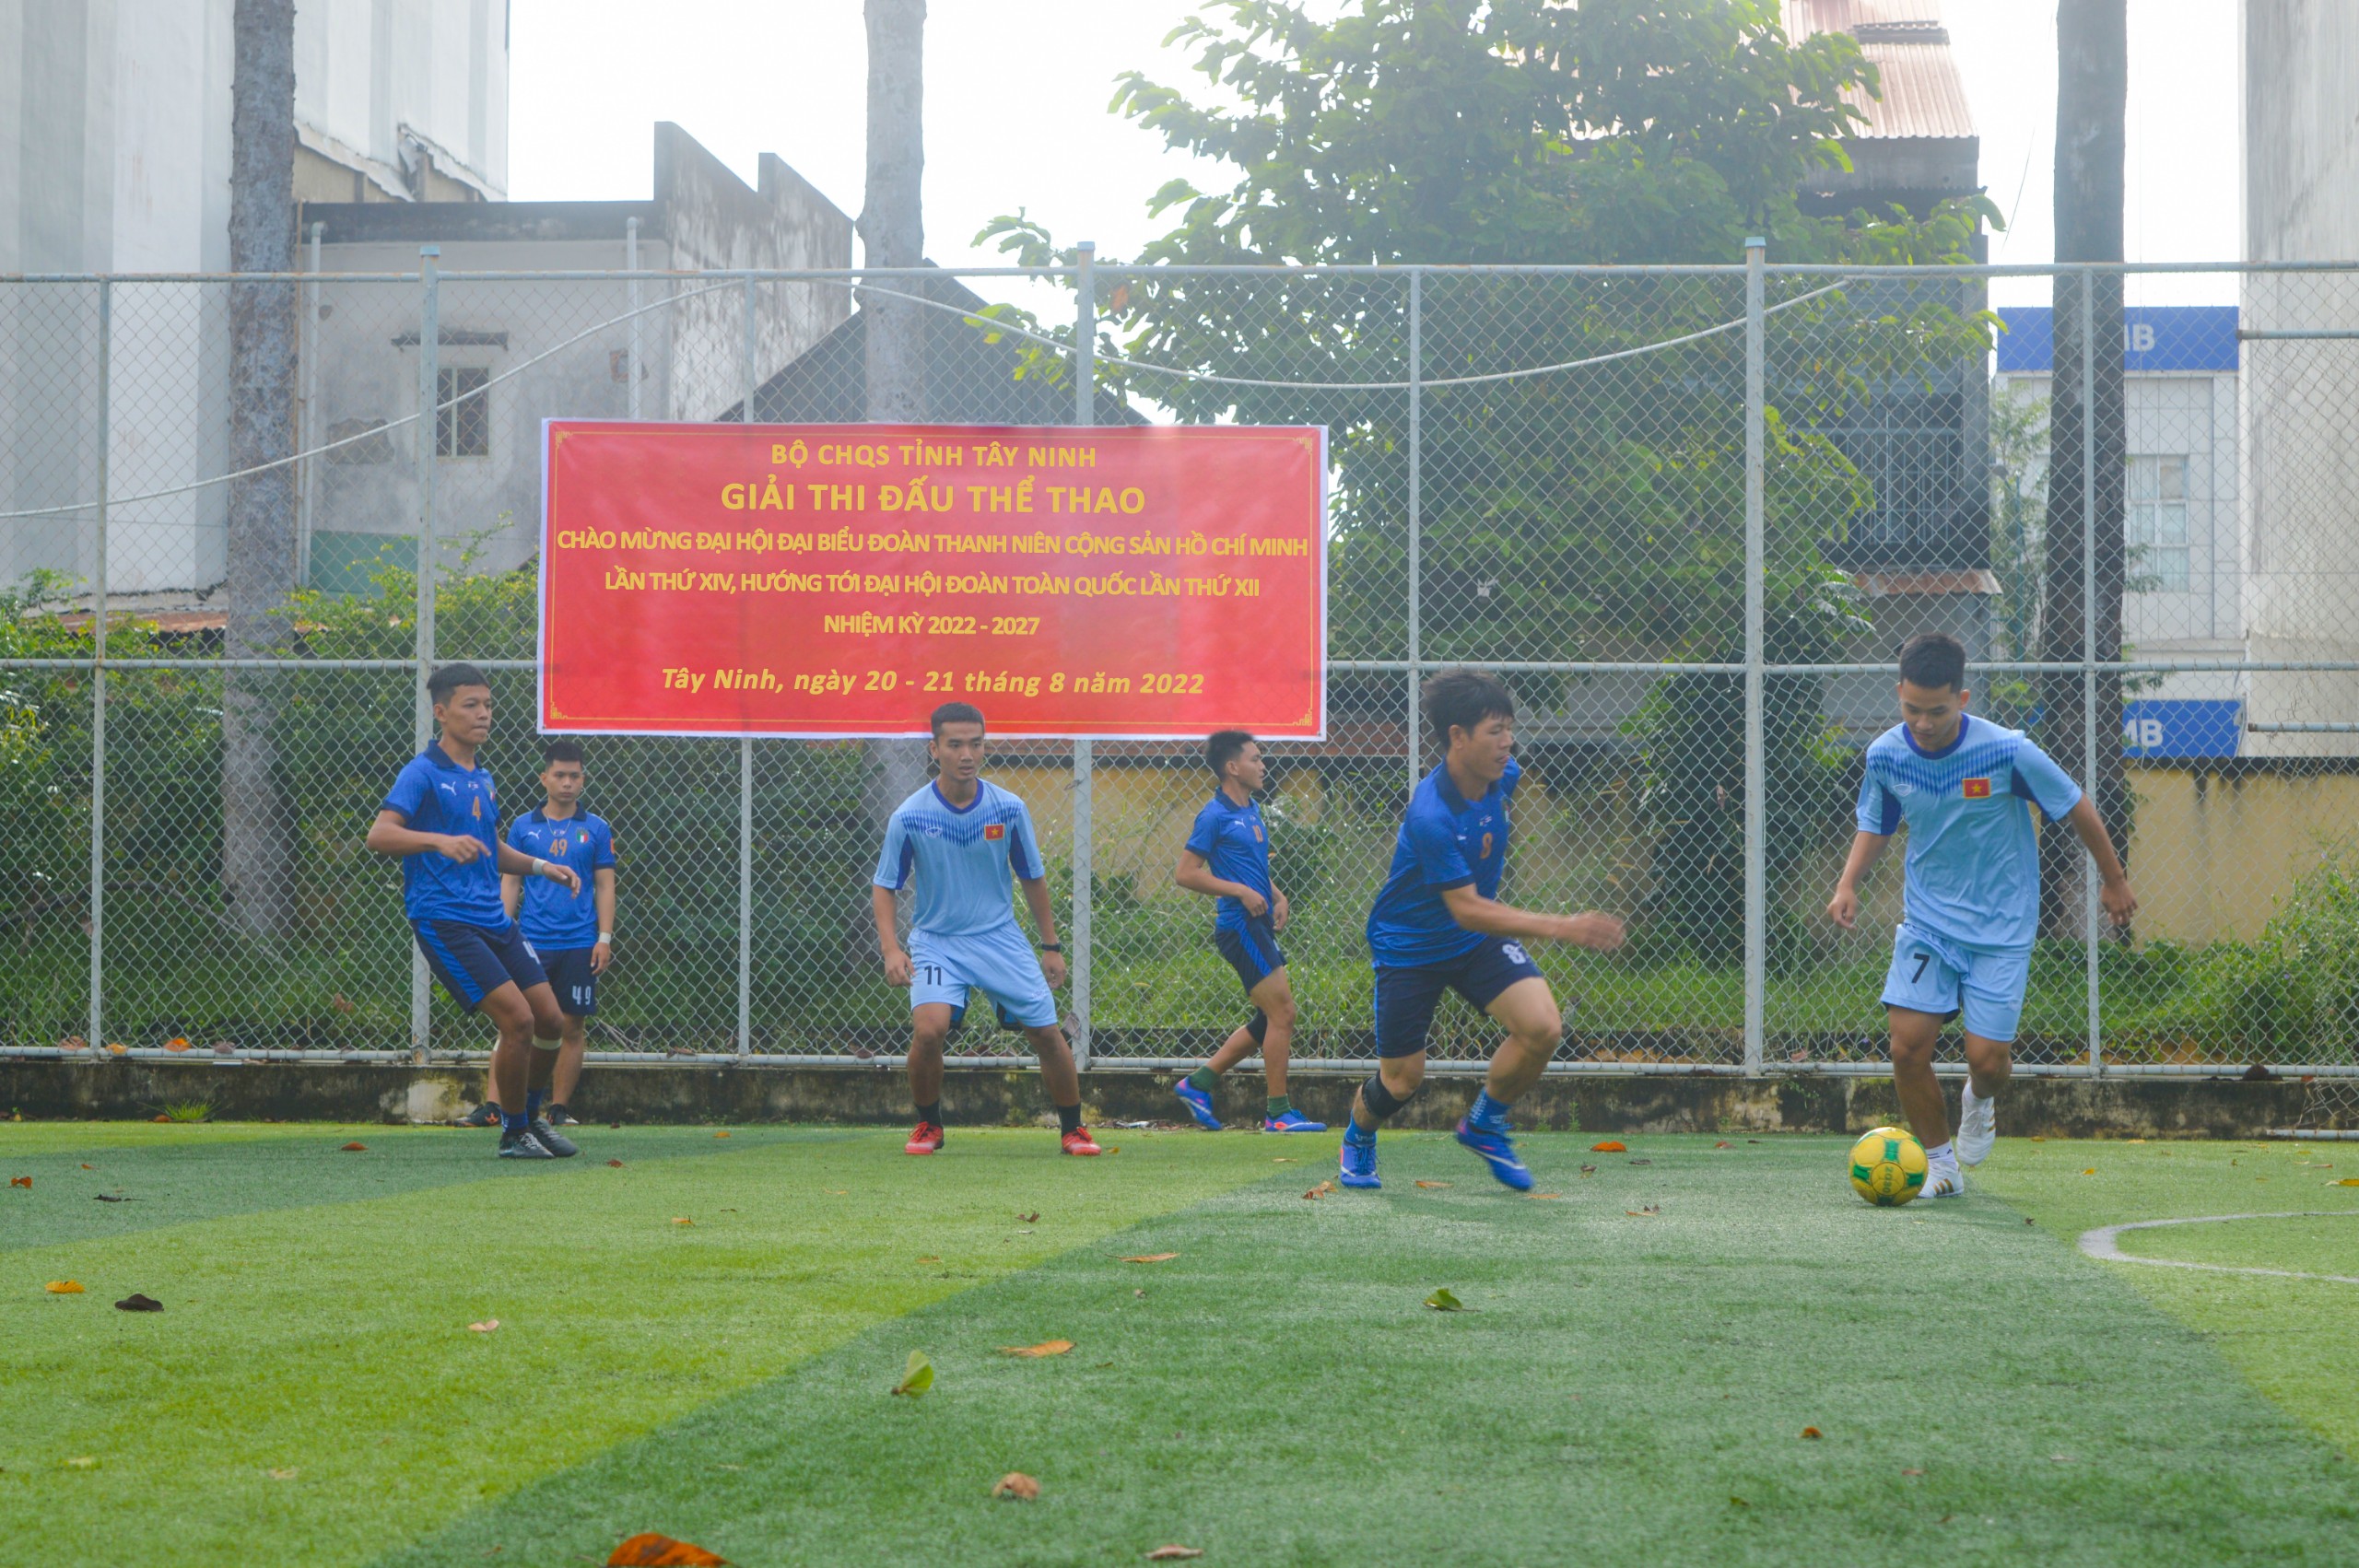 Bộ CHQS tỉnh tổ chức chức giải thi đấu, thể thao giao lưu giữa các đơn vị chào mừng Đại hội Đại biểu Đoàn TNCS Hồ Chí Minh tỉnh Tây Ninh lần thứ XIV, nhiệm kỳ 2022 – 2027.